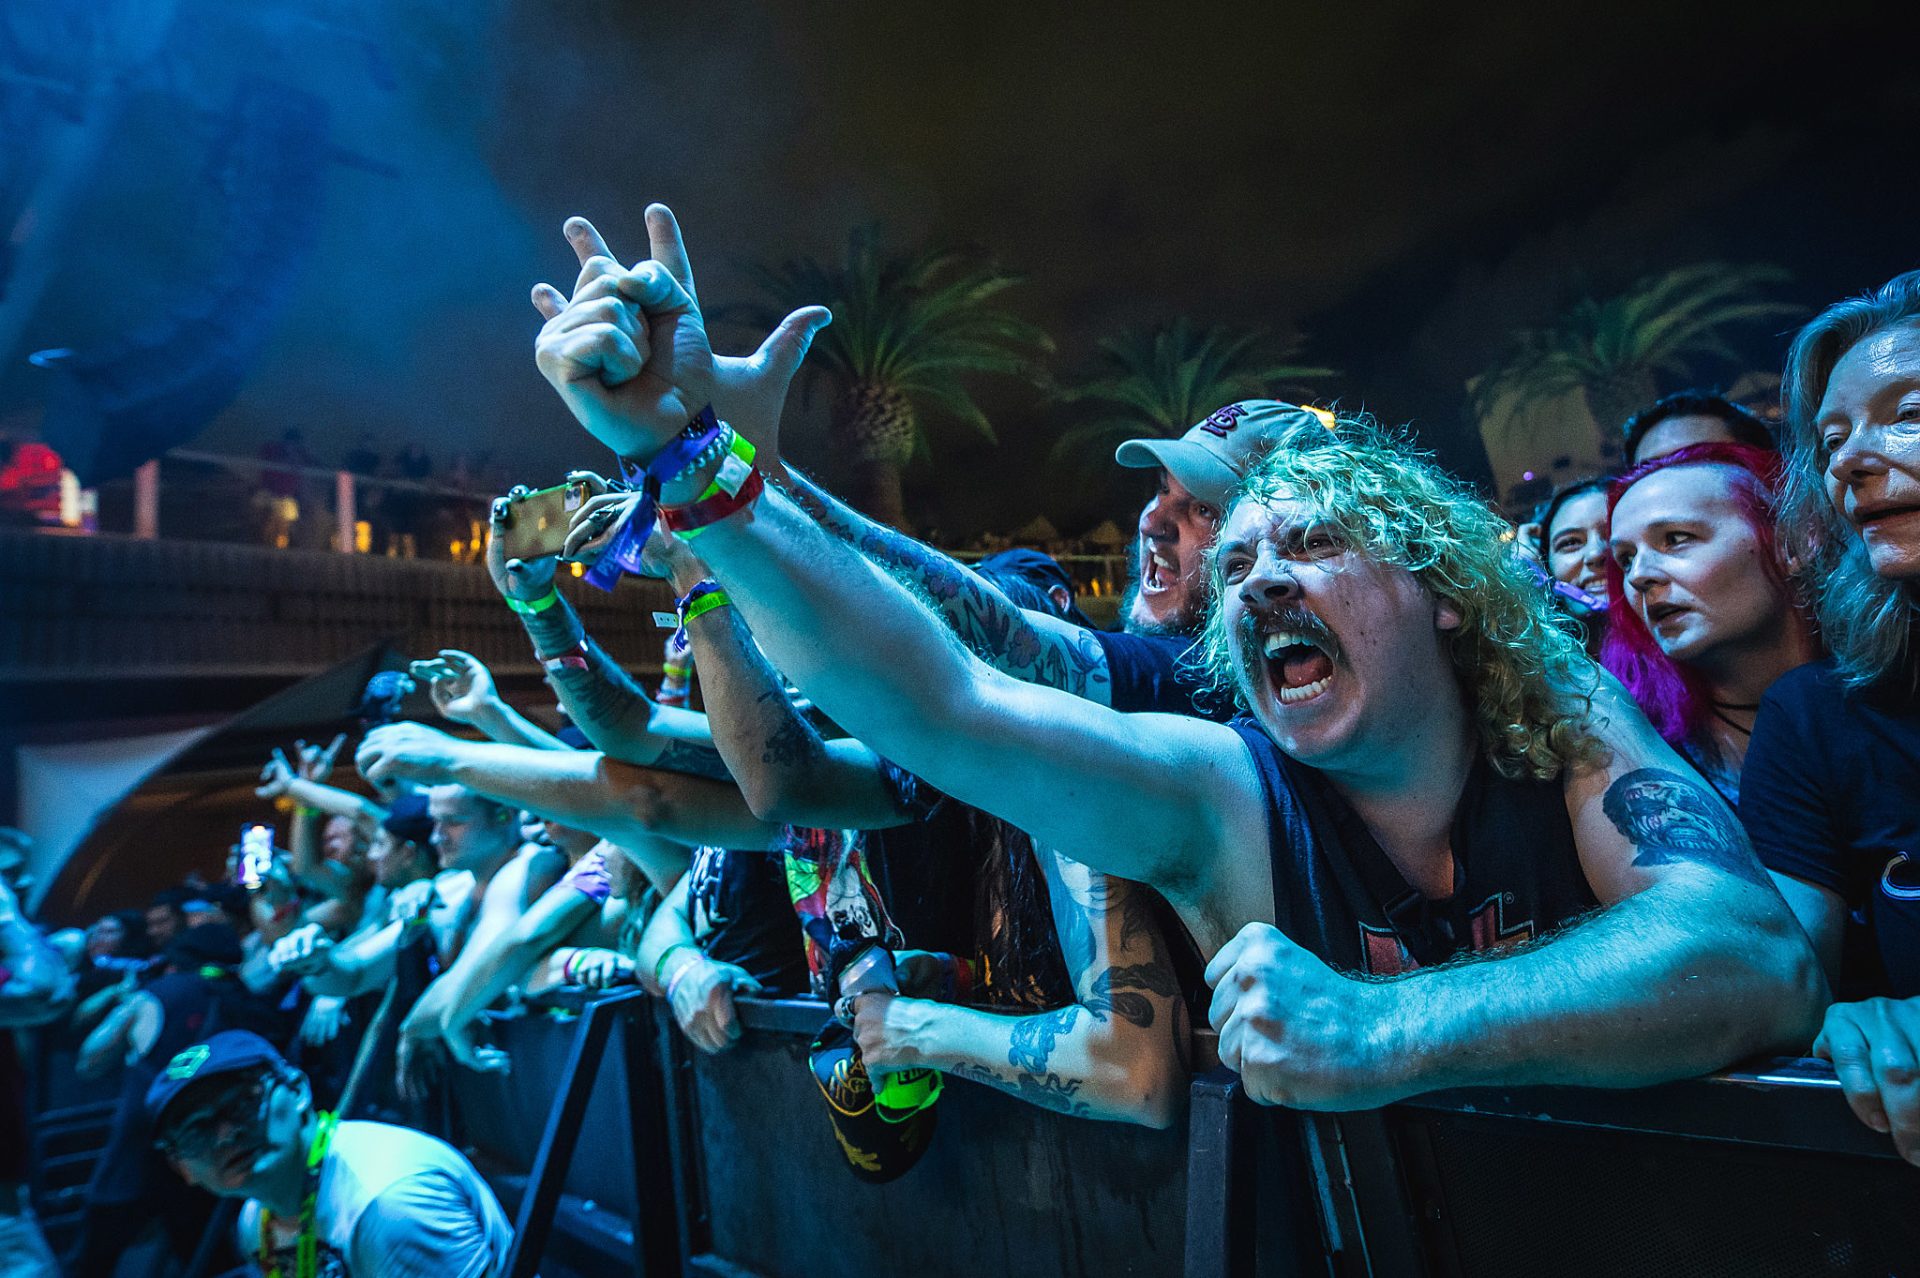 Emperor, Mercyful Fate, Suicidal Tendencies top Psycho Las Vegas 2022 lineup  - Treble